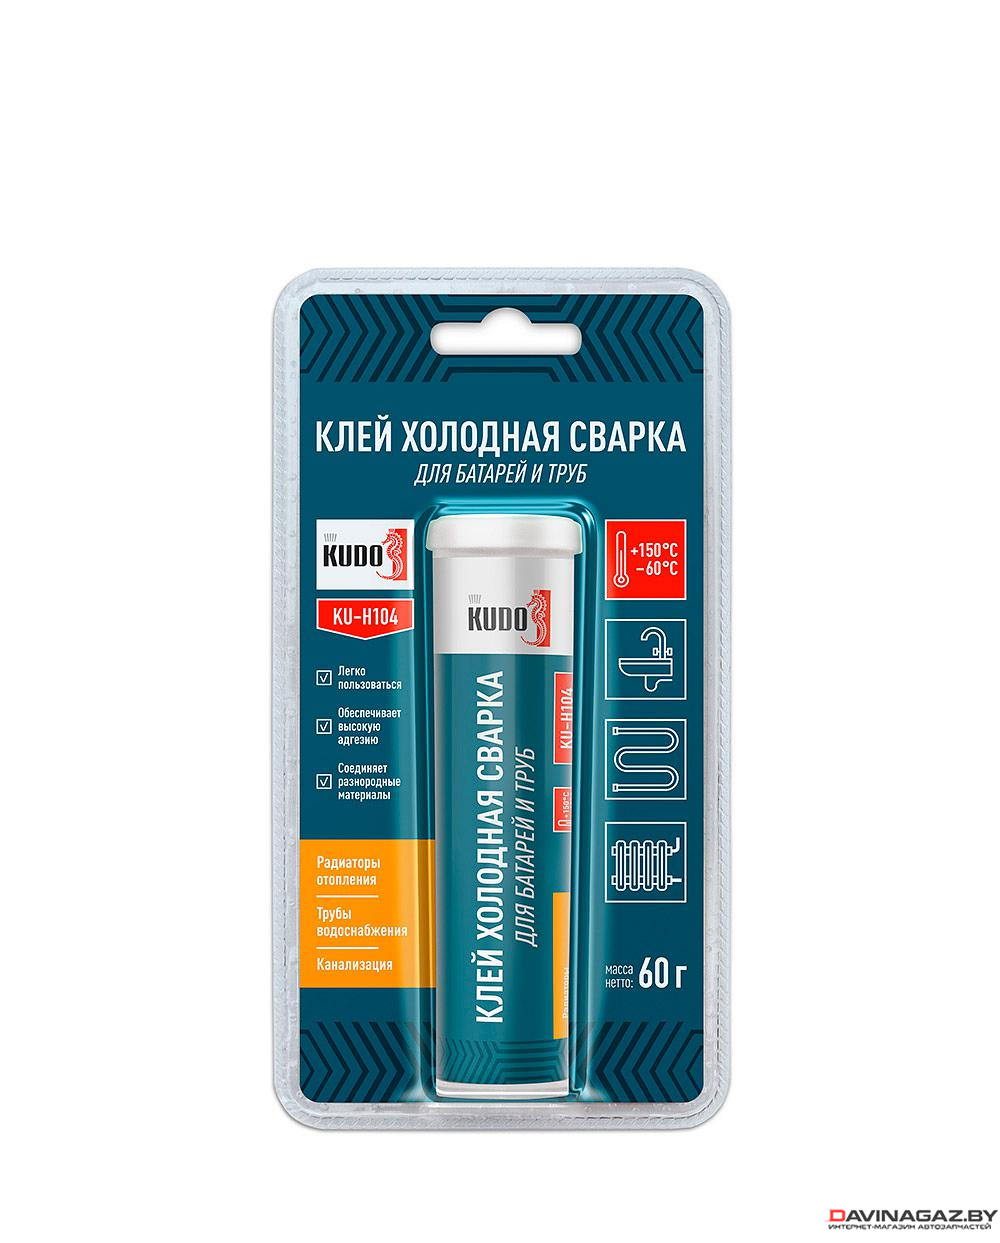 KUDO - Клей-холодная сварка для батарей и труб, 60г / KUH104